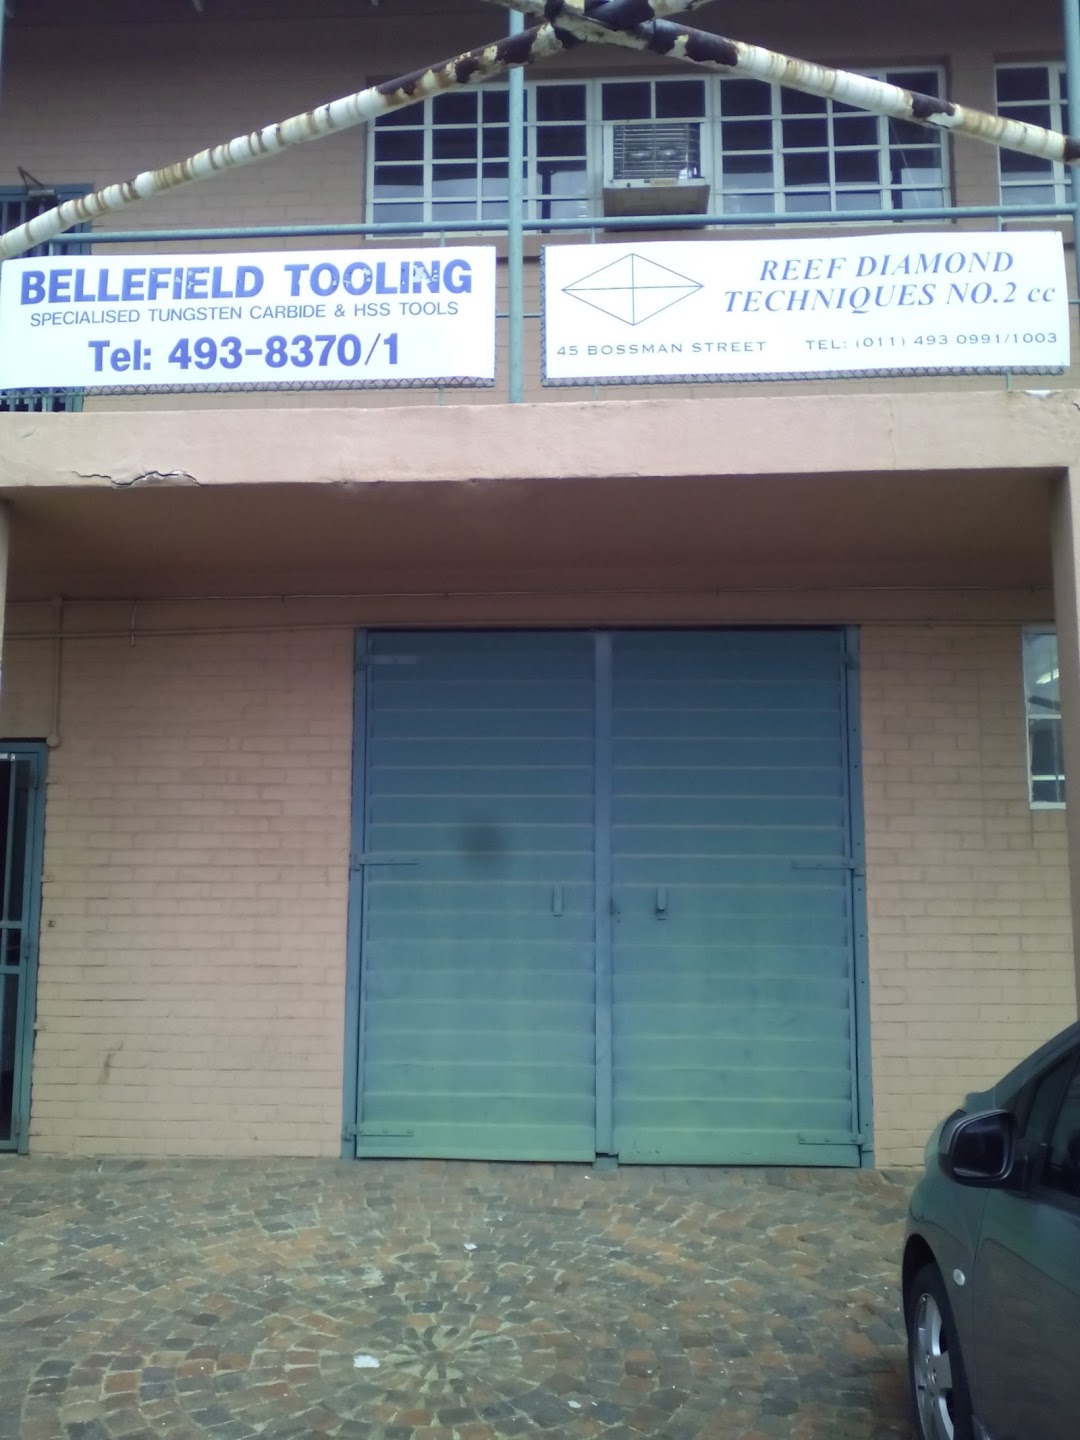 Bellefield Tooling